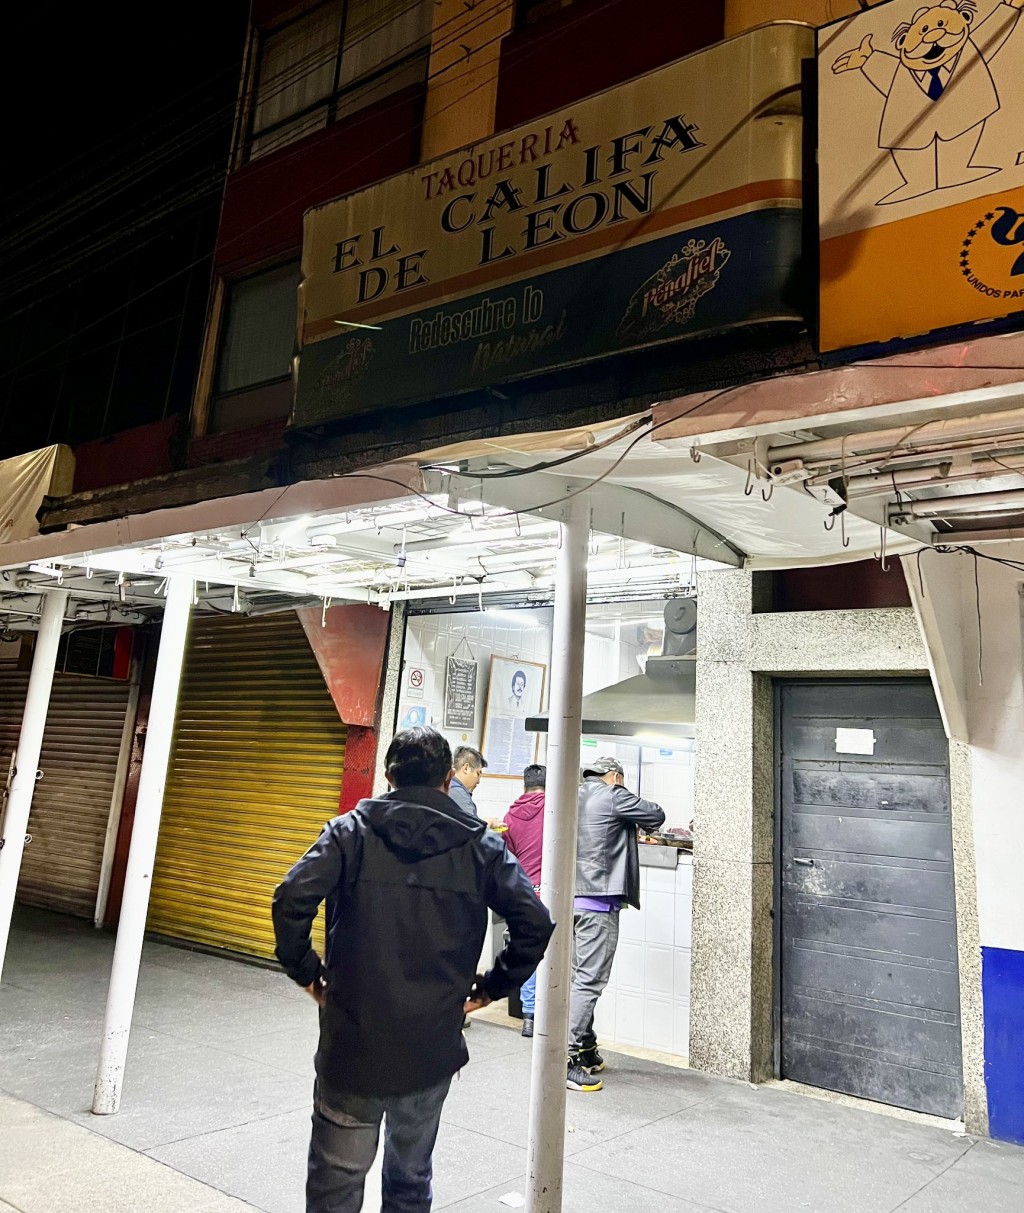 Tacos El Califa de León店舖門面。 X